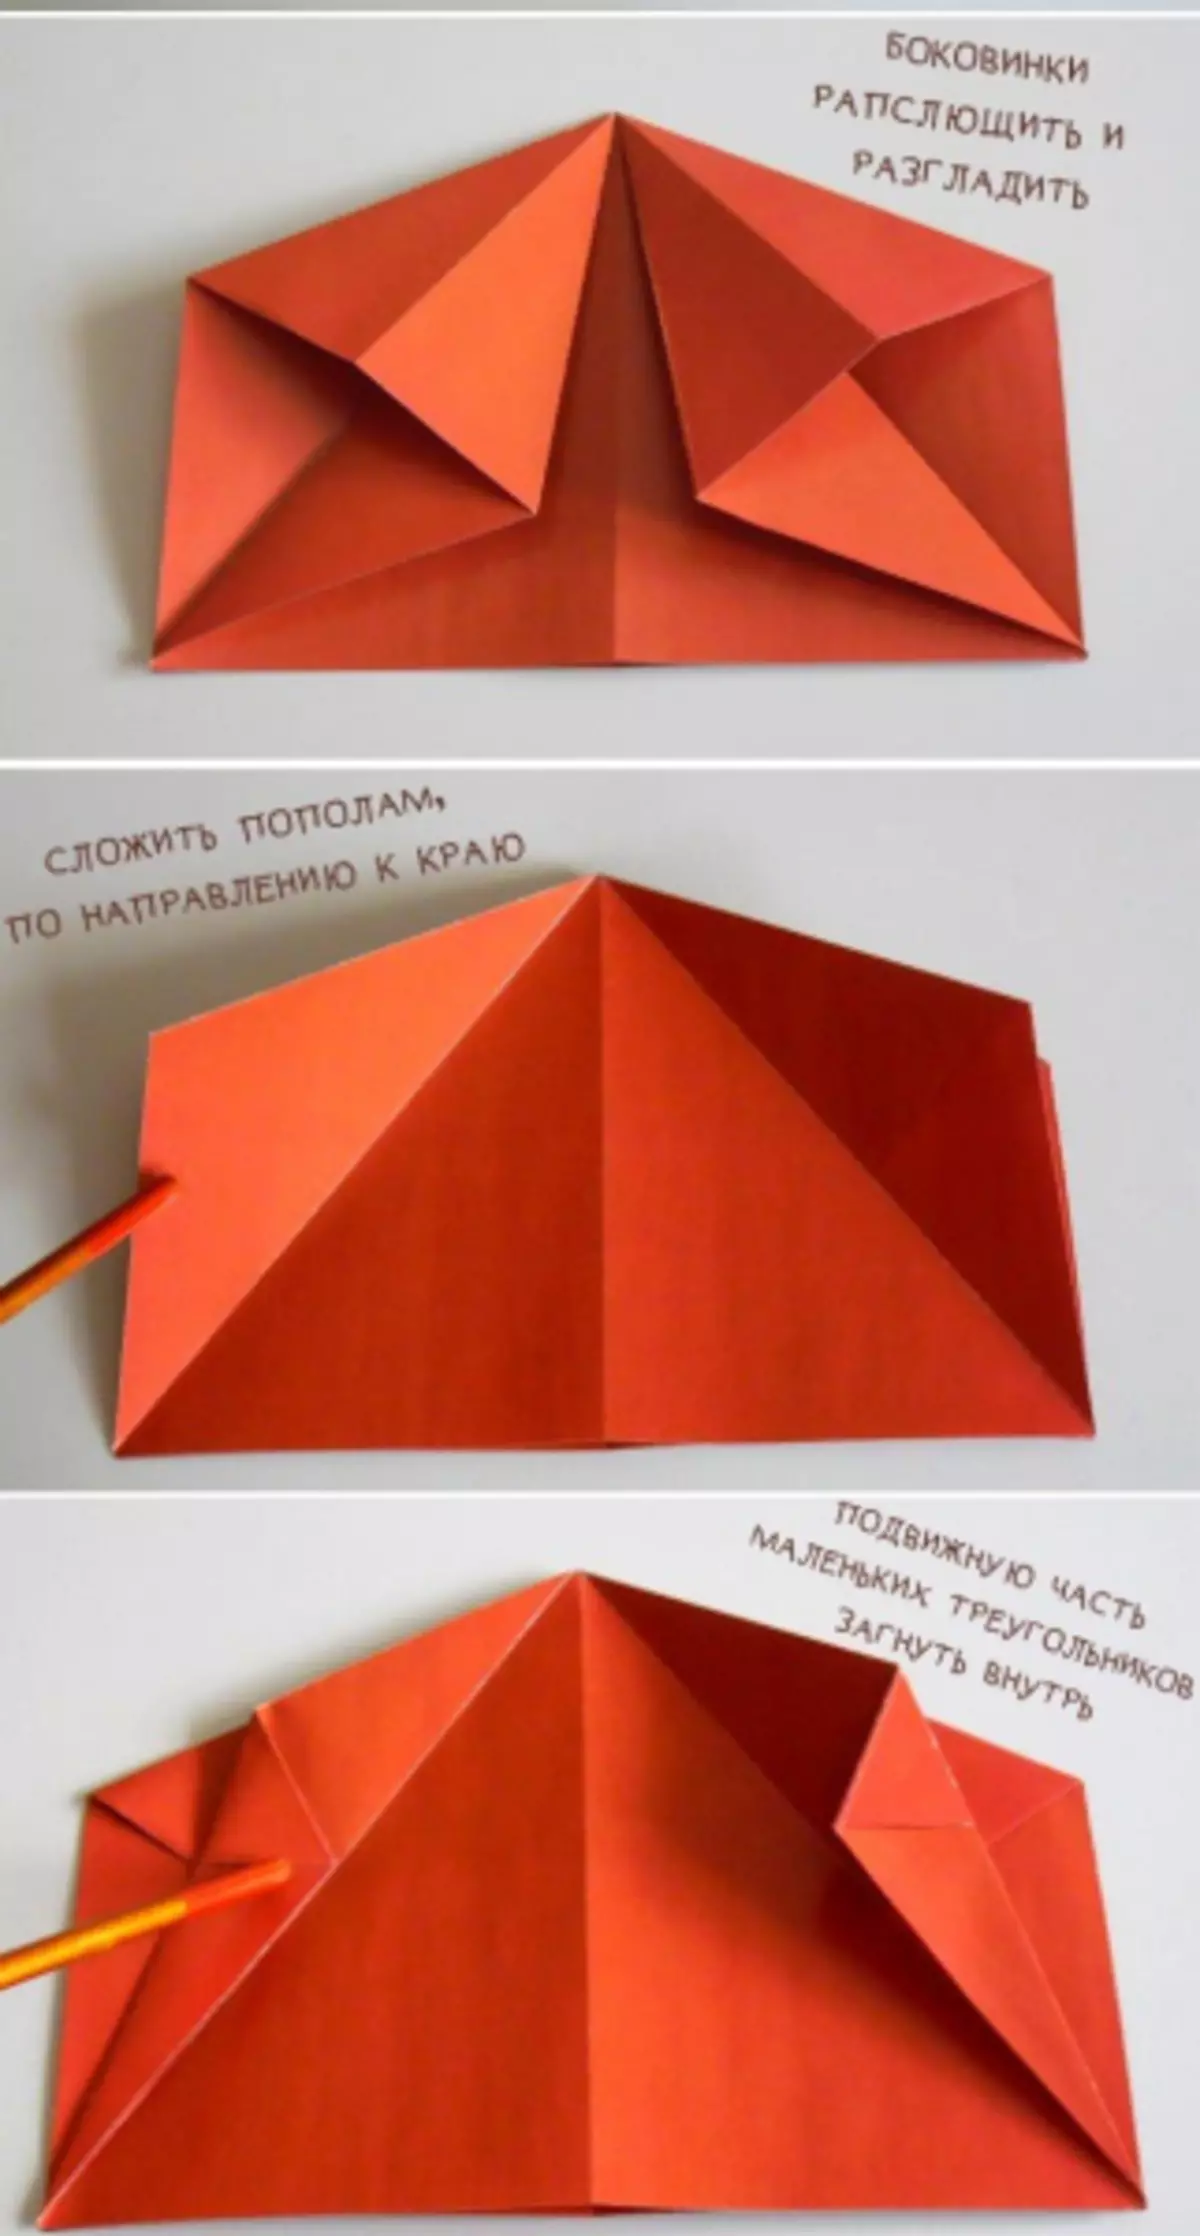 نحوه ساخت یک هواپیما کاغذی - آموزش، عکس